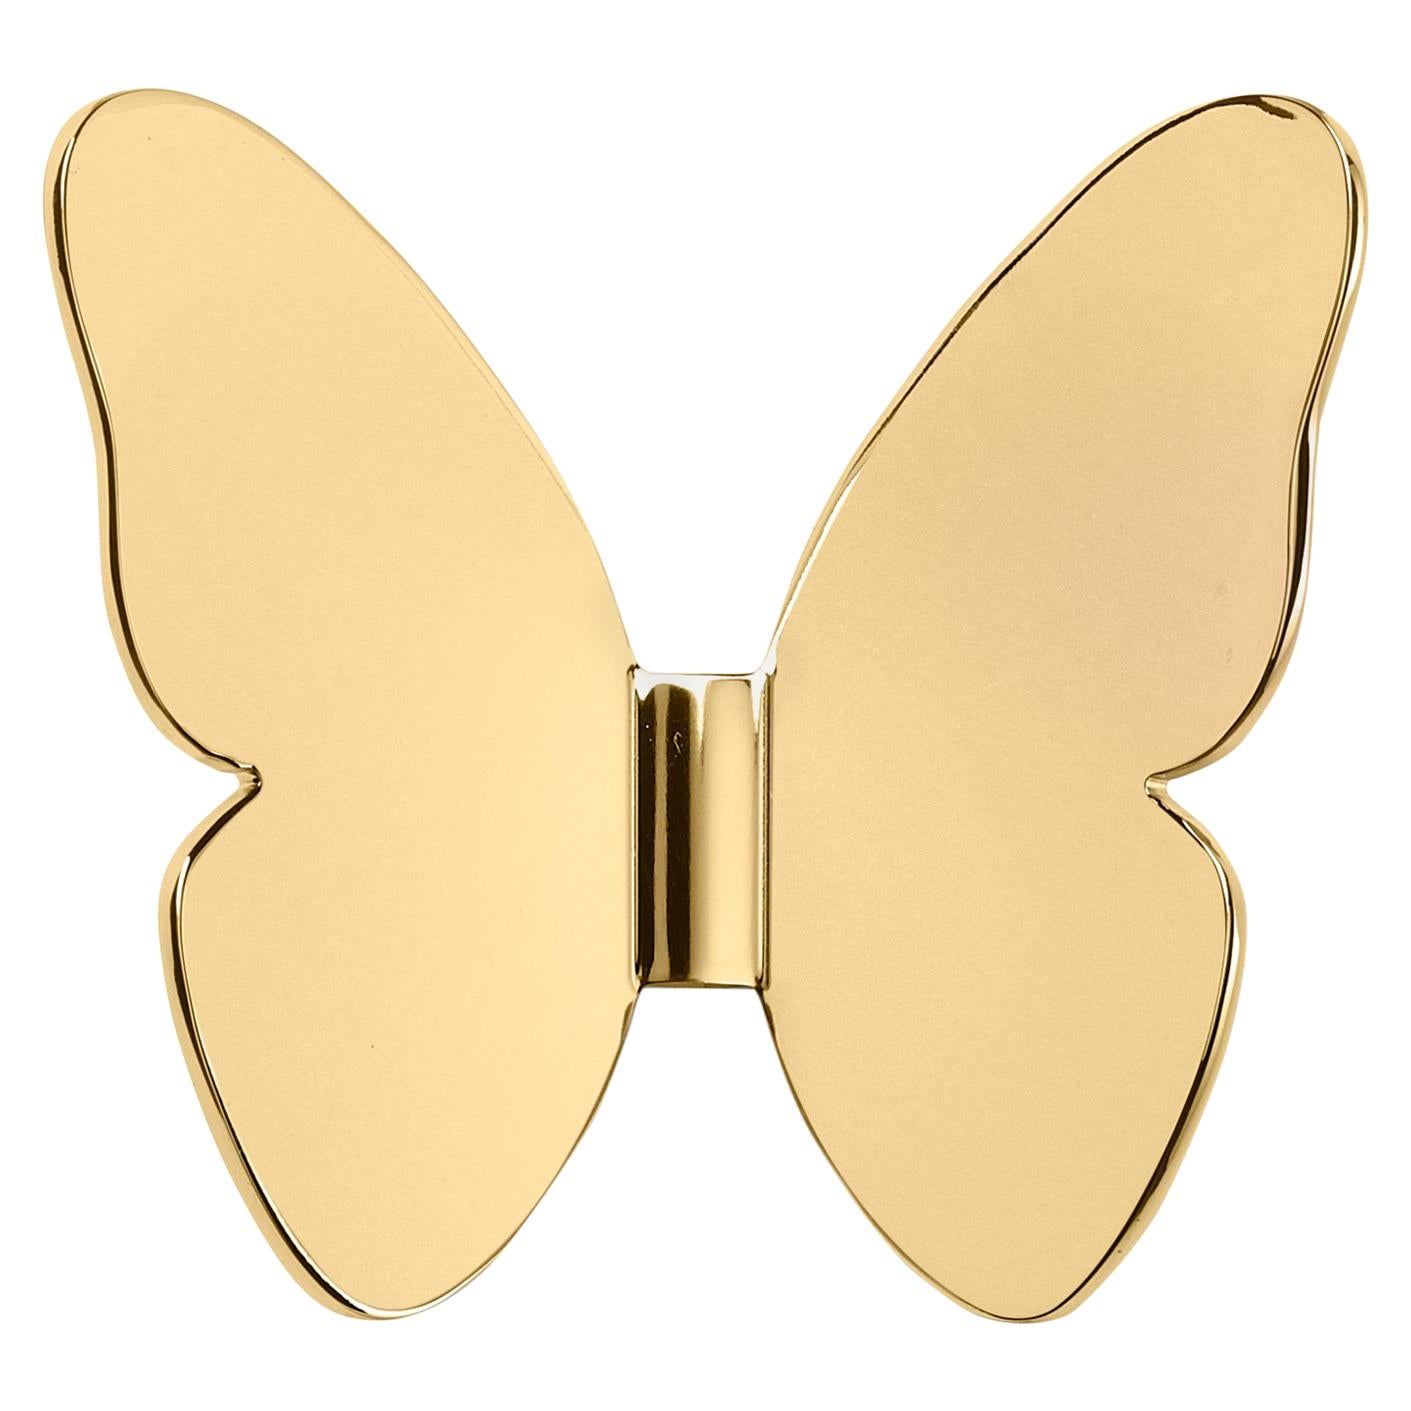 Ghidini 1961 Single Butterfly Coatrack in Gold by Richard Hutten For Sale